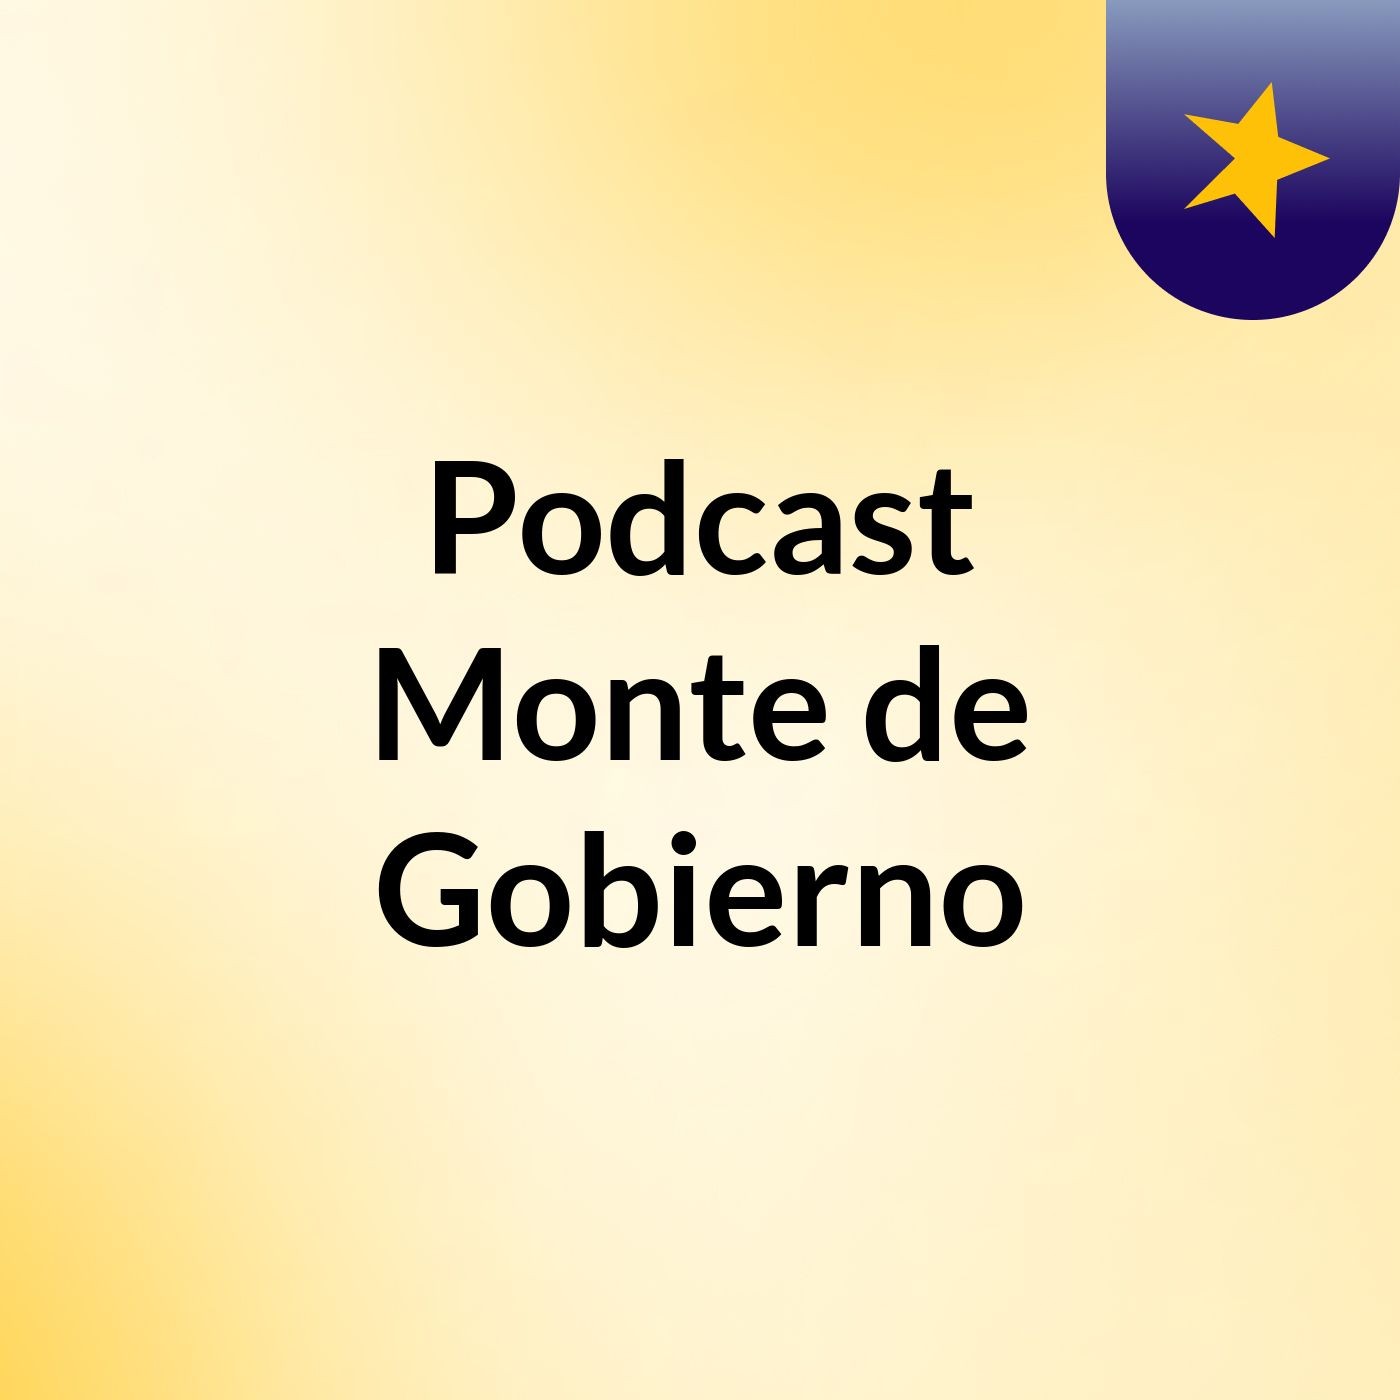 Podcast Monte de Gobierno